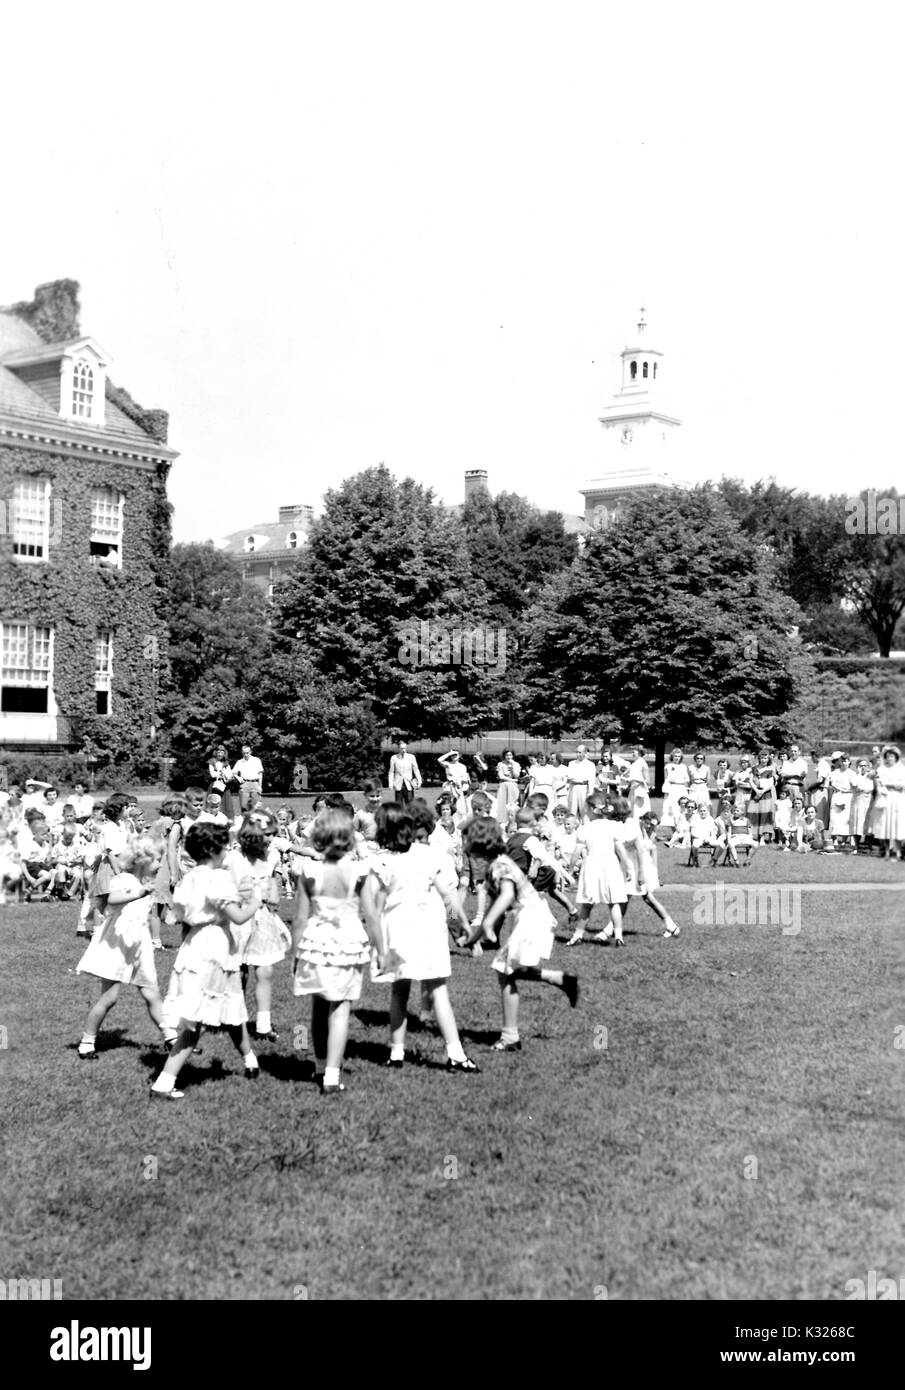 À la fin de l'année scolaire pour une école de démonstration à l'Université Johns Hopkins, de jeunes garçons et filles de présenter leur spectacle dans l'herbe sur une journée ensoleillée, sautant joyeusement danser devant un auditoire composé de camarades de classe, les enseignants et les parents assis et debout à l'extérieur d'un bâtiment du campus recouvert de lierre, avec Gilman Hall, un bâtiment en sciences humaines sur le campus, l'oeil à travers les arbres au loin, Baltimore, Maryland, juillet, 1950. Banque D'Images